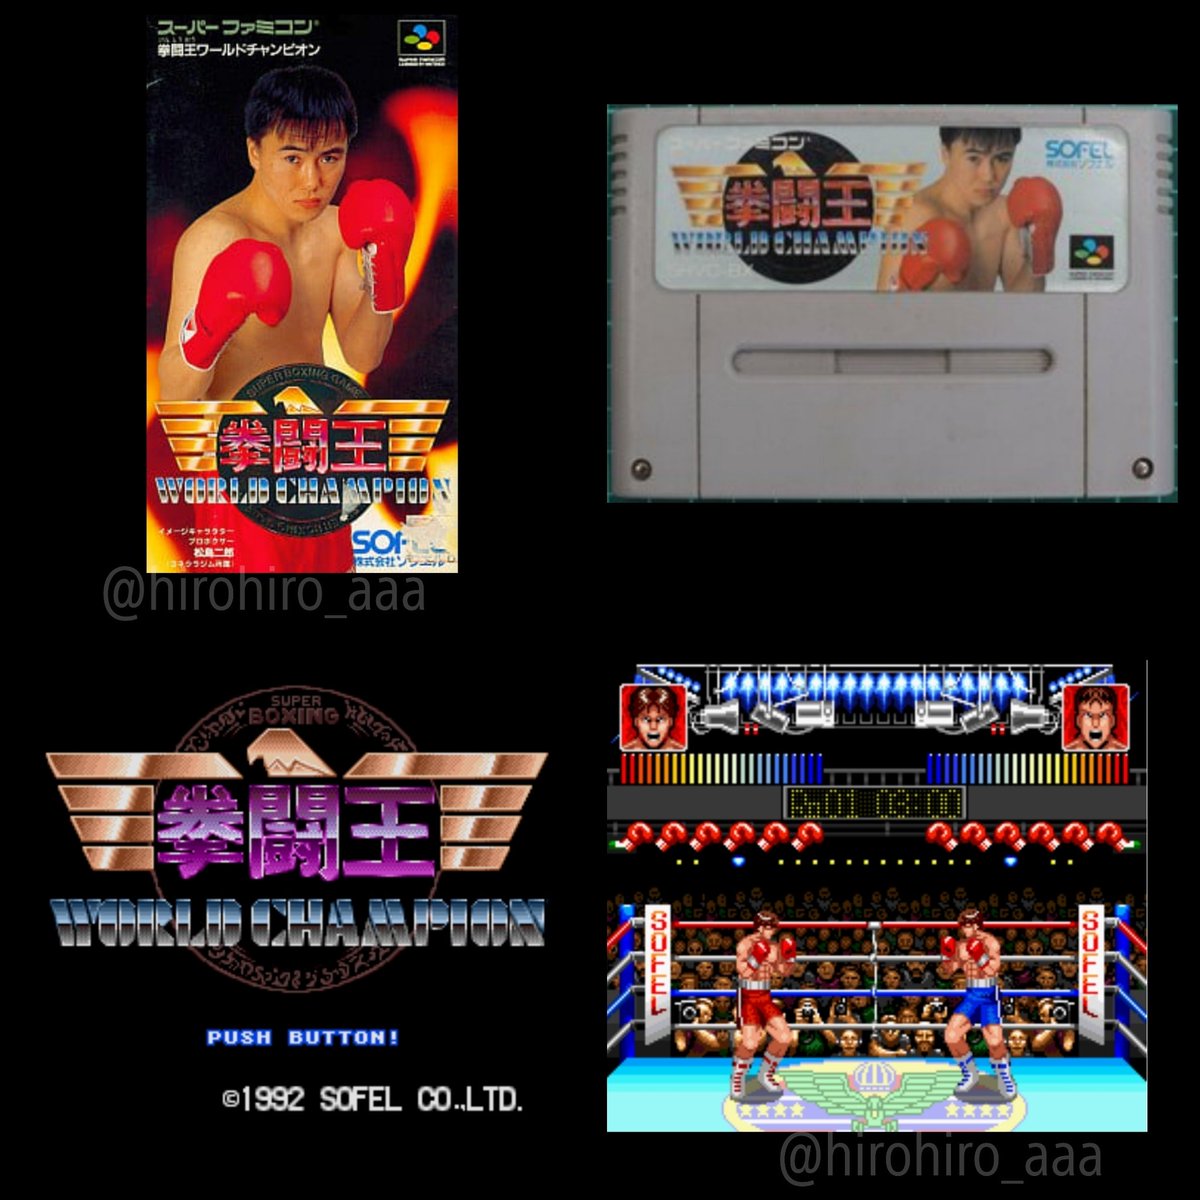 今日は何の日

1992年4月28日発売
スーパーファミコン
ソフト
拳闘王ワールドチャンピオン

#今日は何の日
#1992年4月28日発売
#スーファミ
#ソフト
#拳闘王ワールドチャンピオン

@retoro_mode